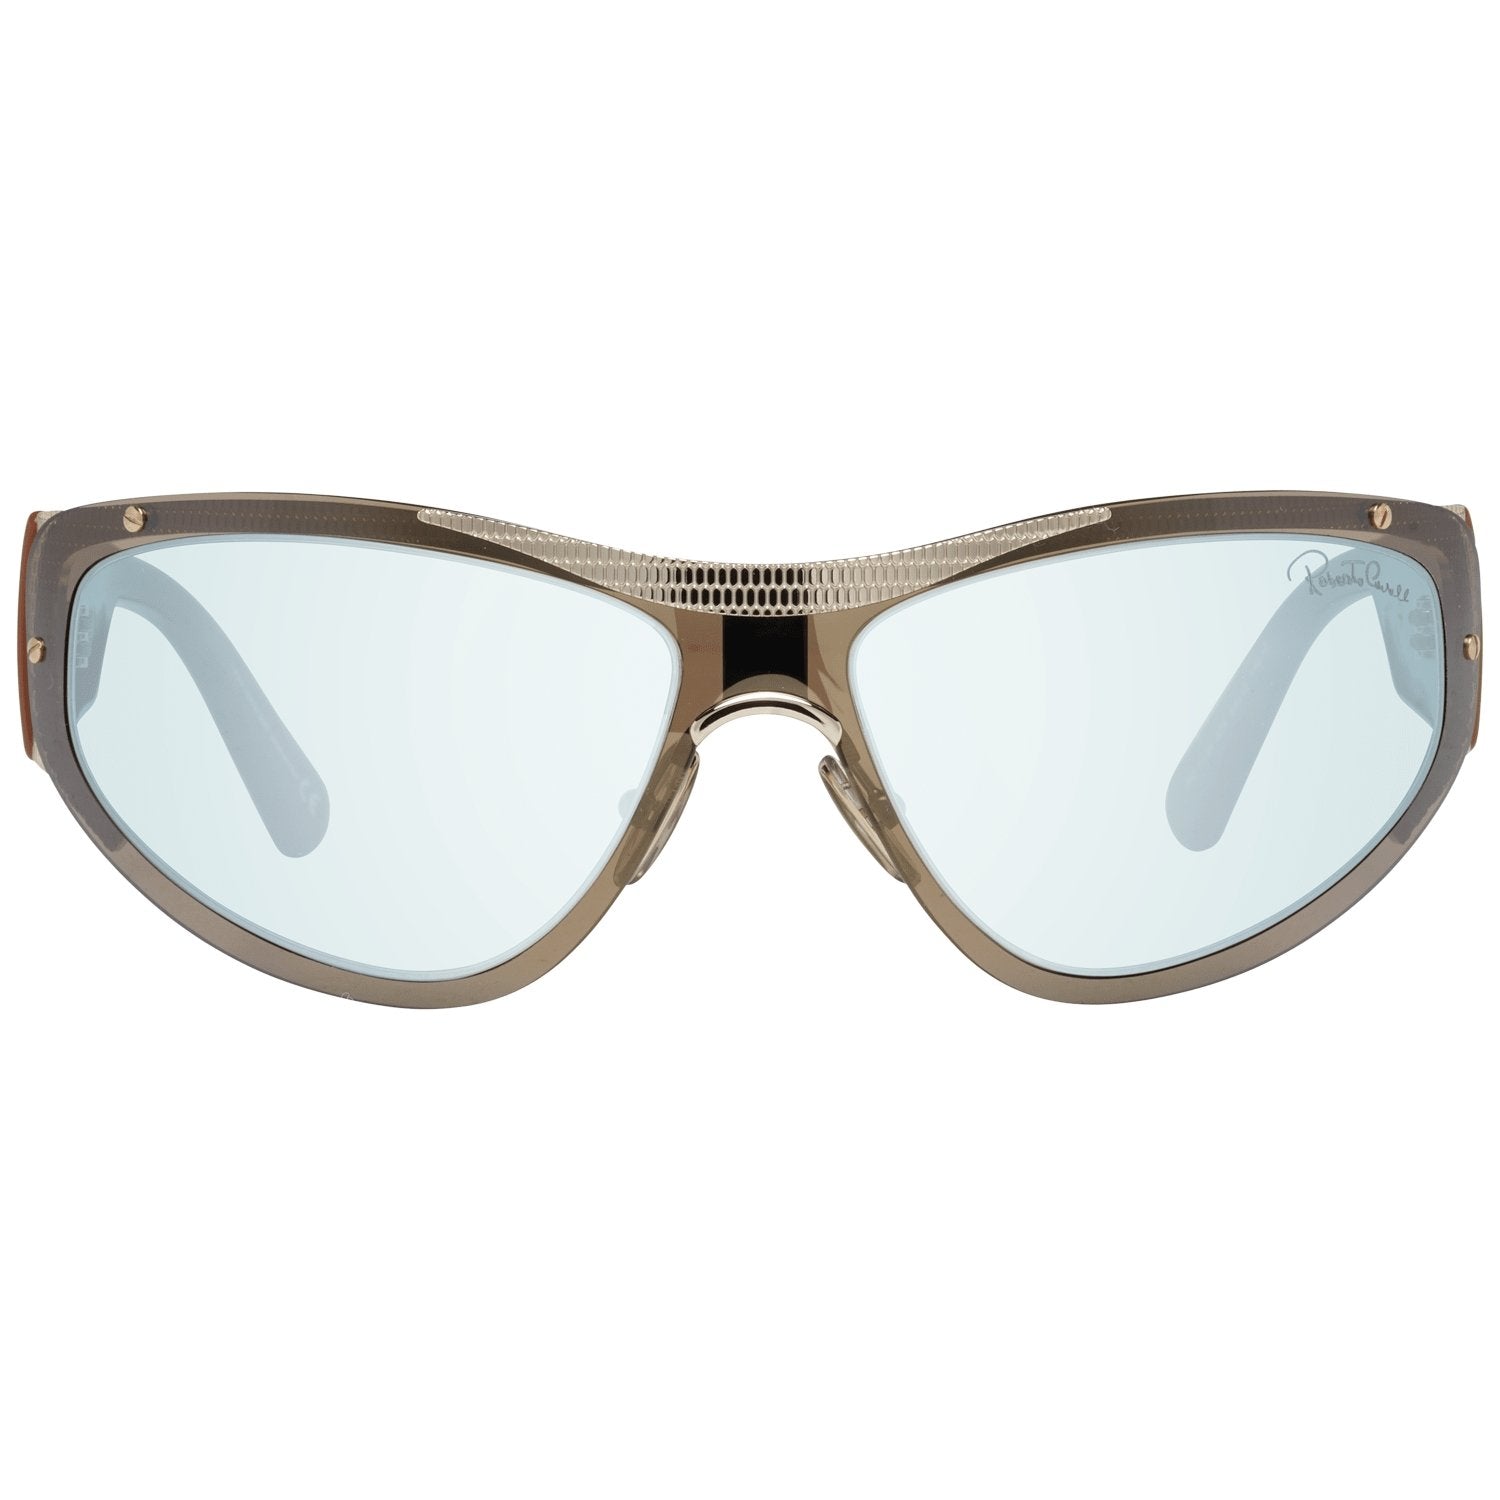 Roberto Cavalli Brown Sunglasses for Woman - Fizigo